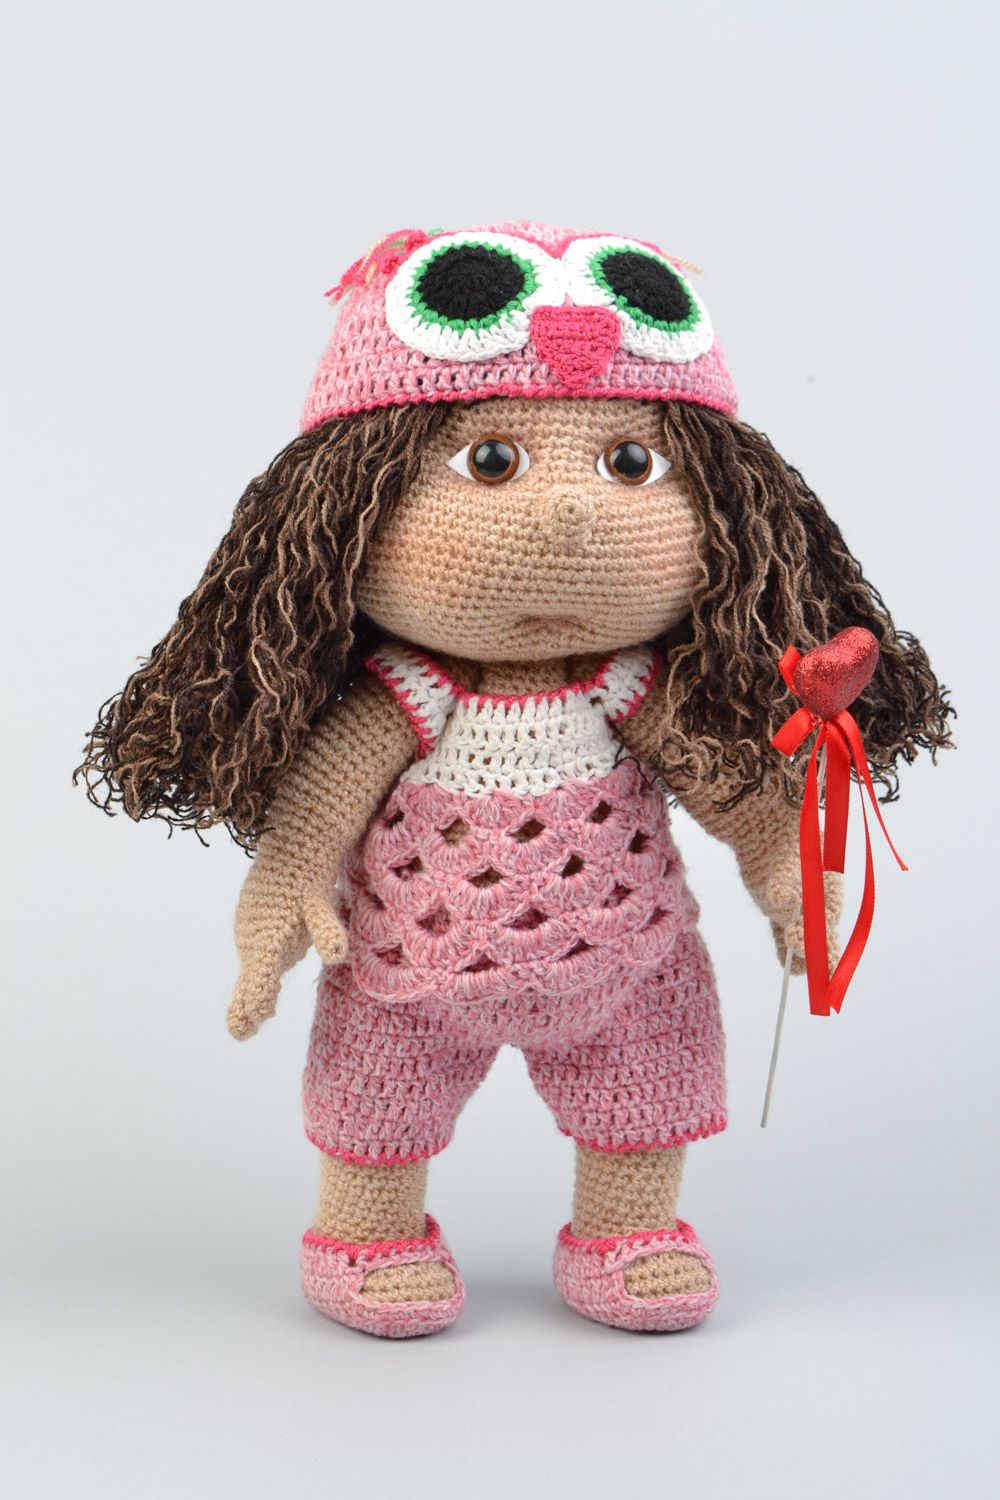 Handmade soft crochet toy girl doll for children photo 3